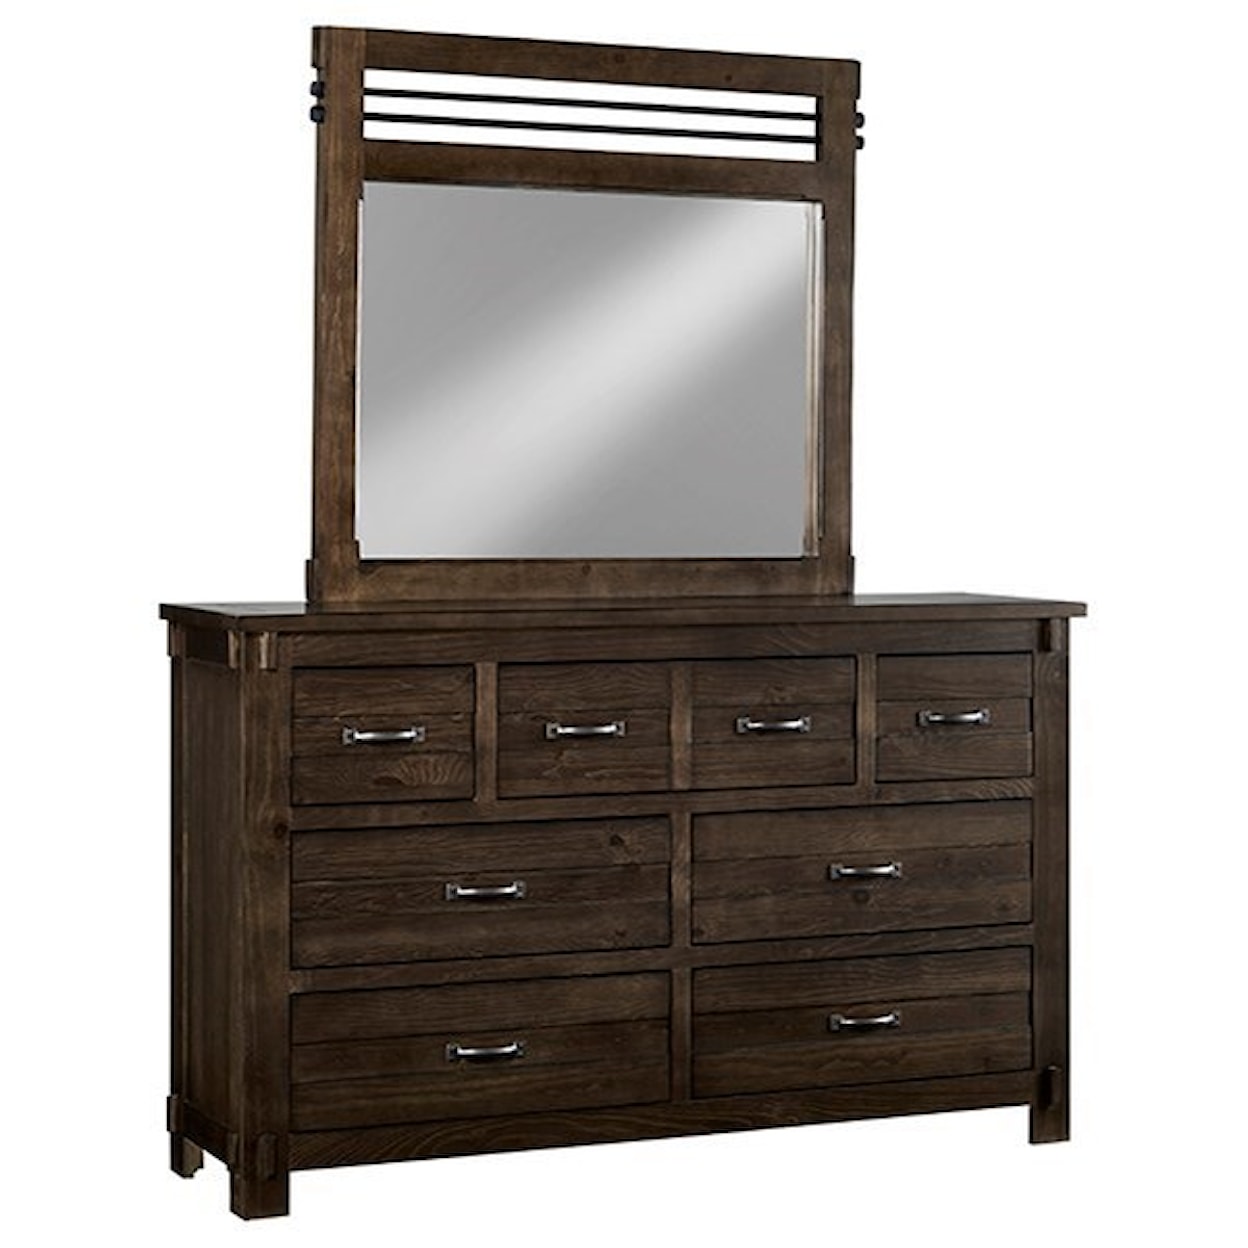 Progressive Furniture Thackery Drawer Dresser & Mirror